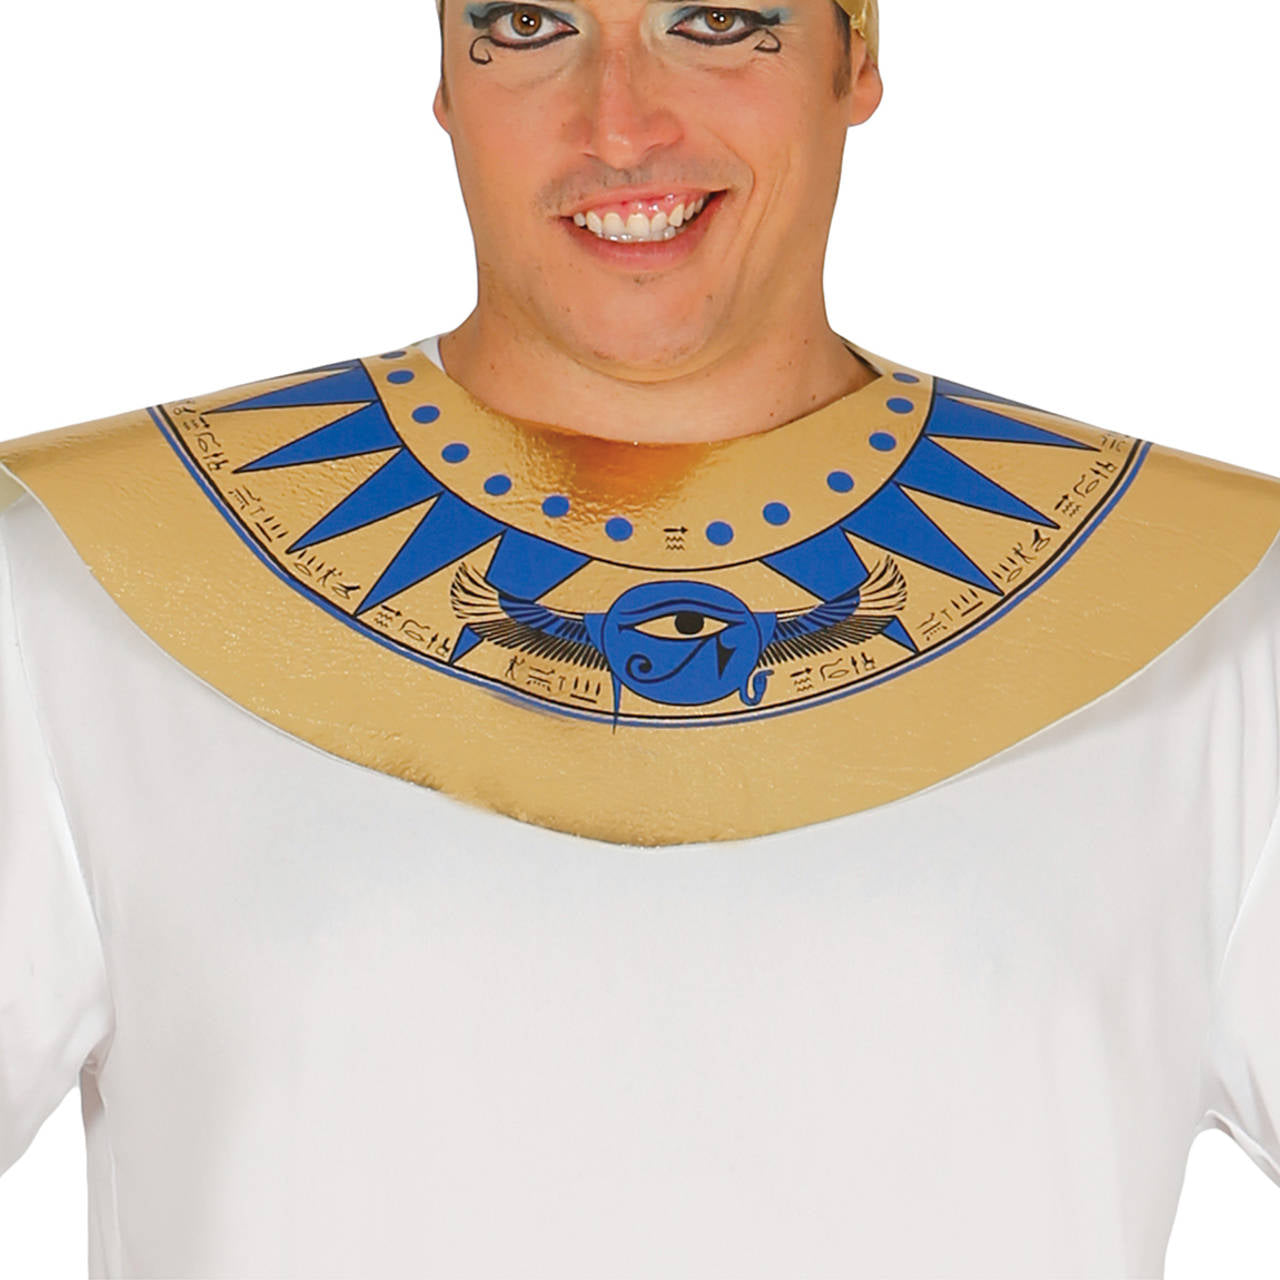 Acquista online il costume da faraone egiziano per uomo